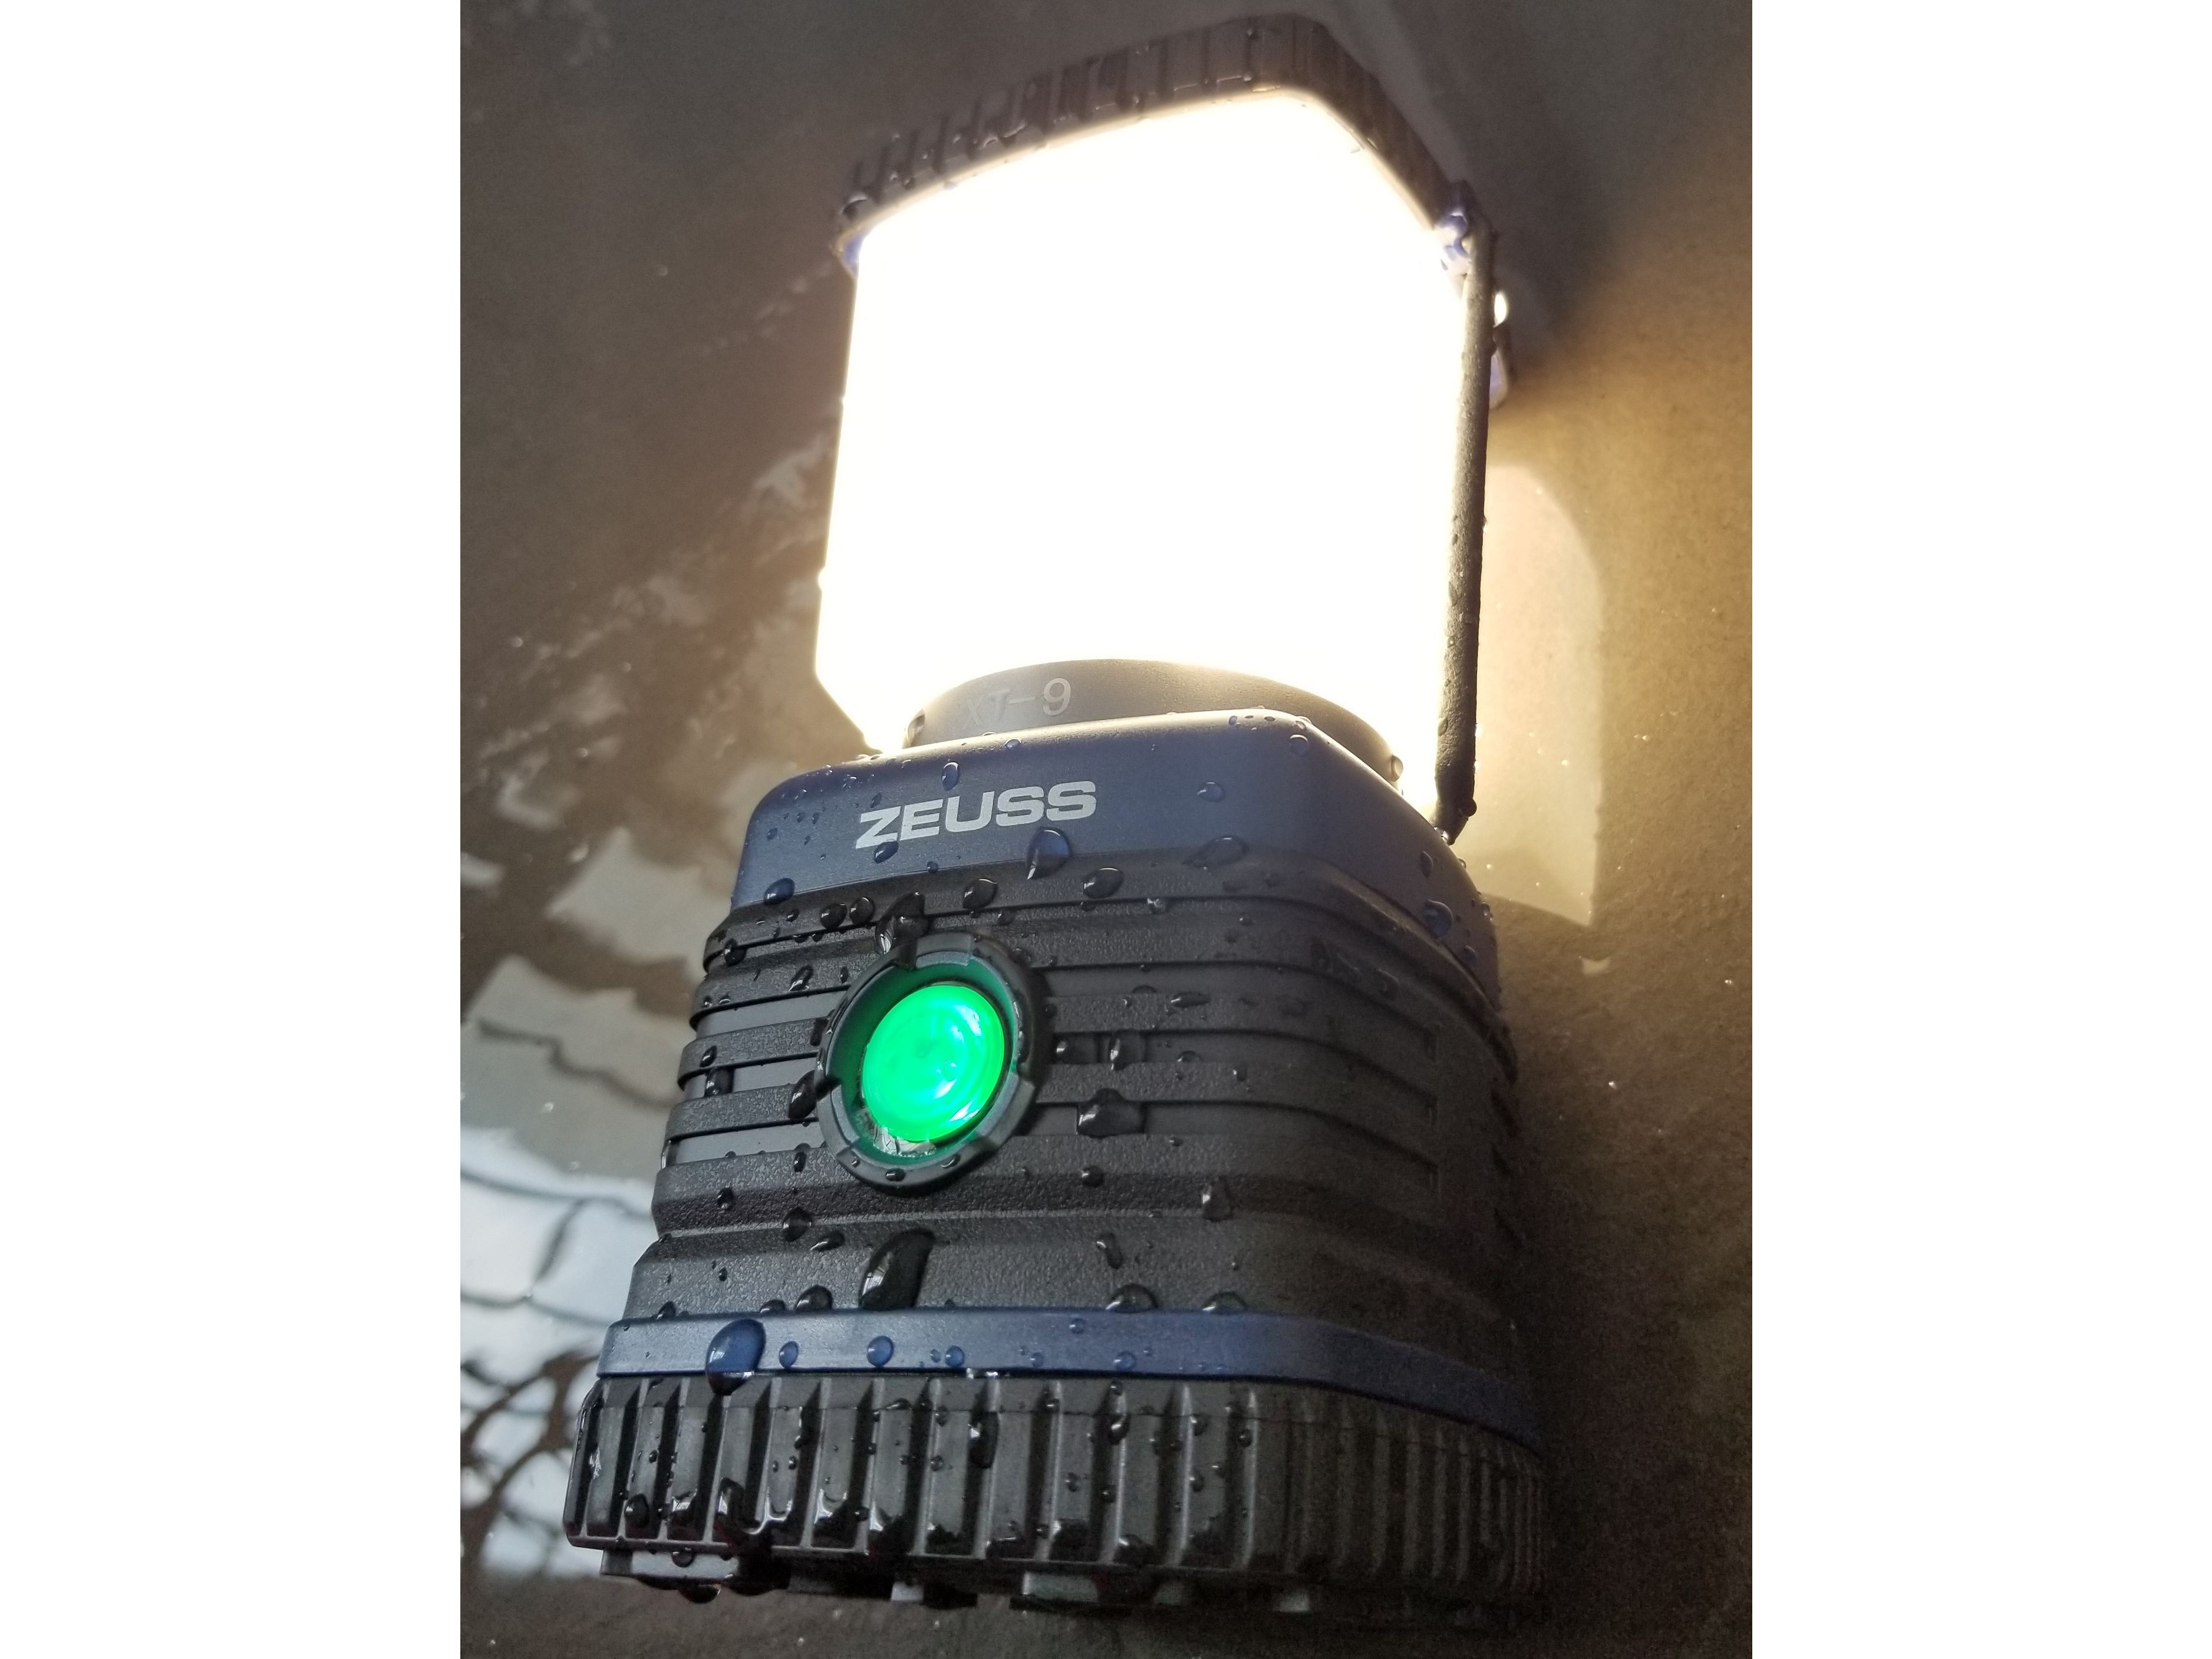 zeuss-heavy-duty-led-lantaarn-xt-9